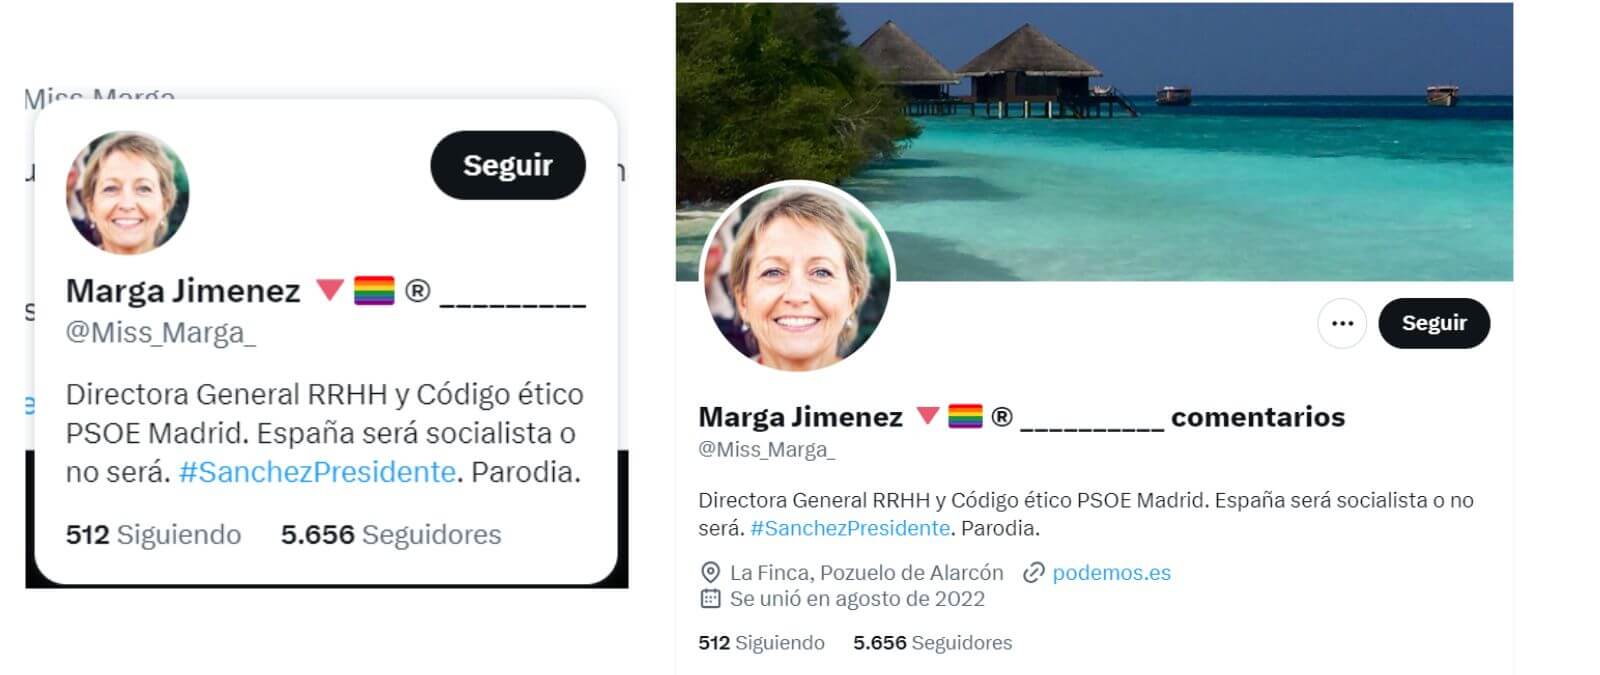 Cuidado la cuenta de Twitter Marga Jimenez ‘Miss_Marga_’ que dice formar parte del PSOE de Madrid: es una cuenta trol